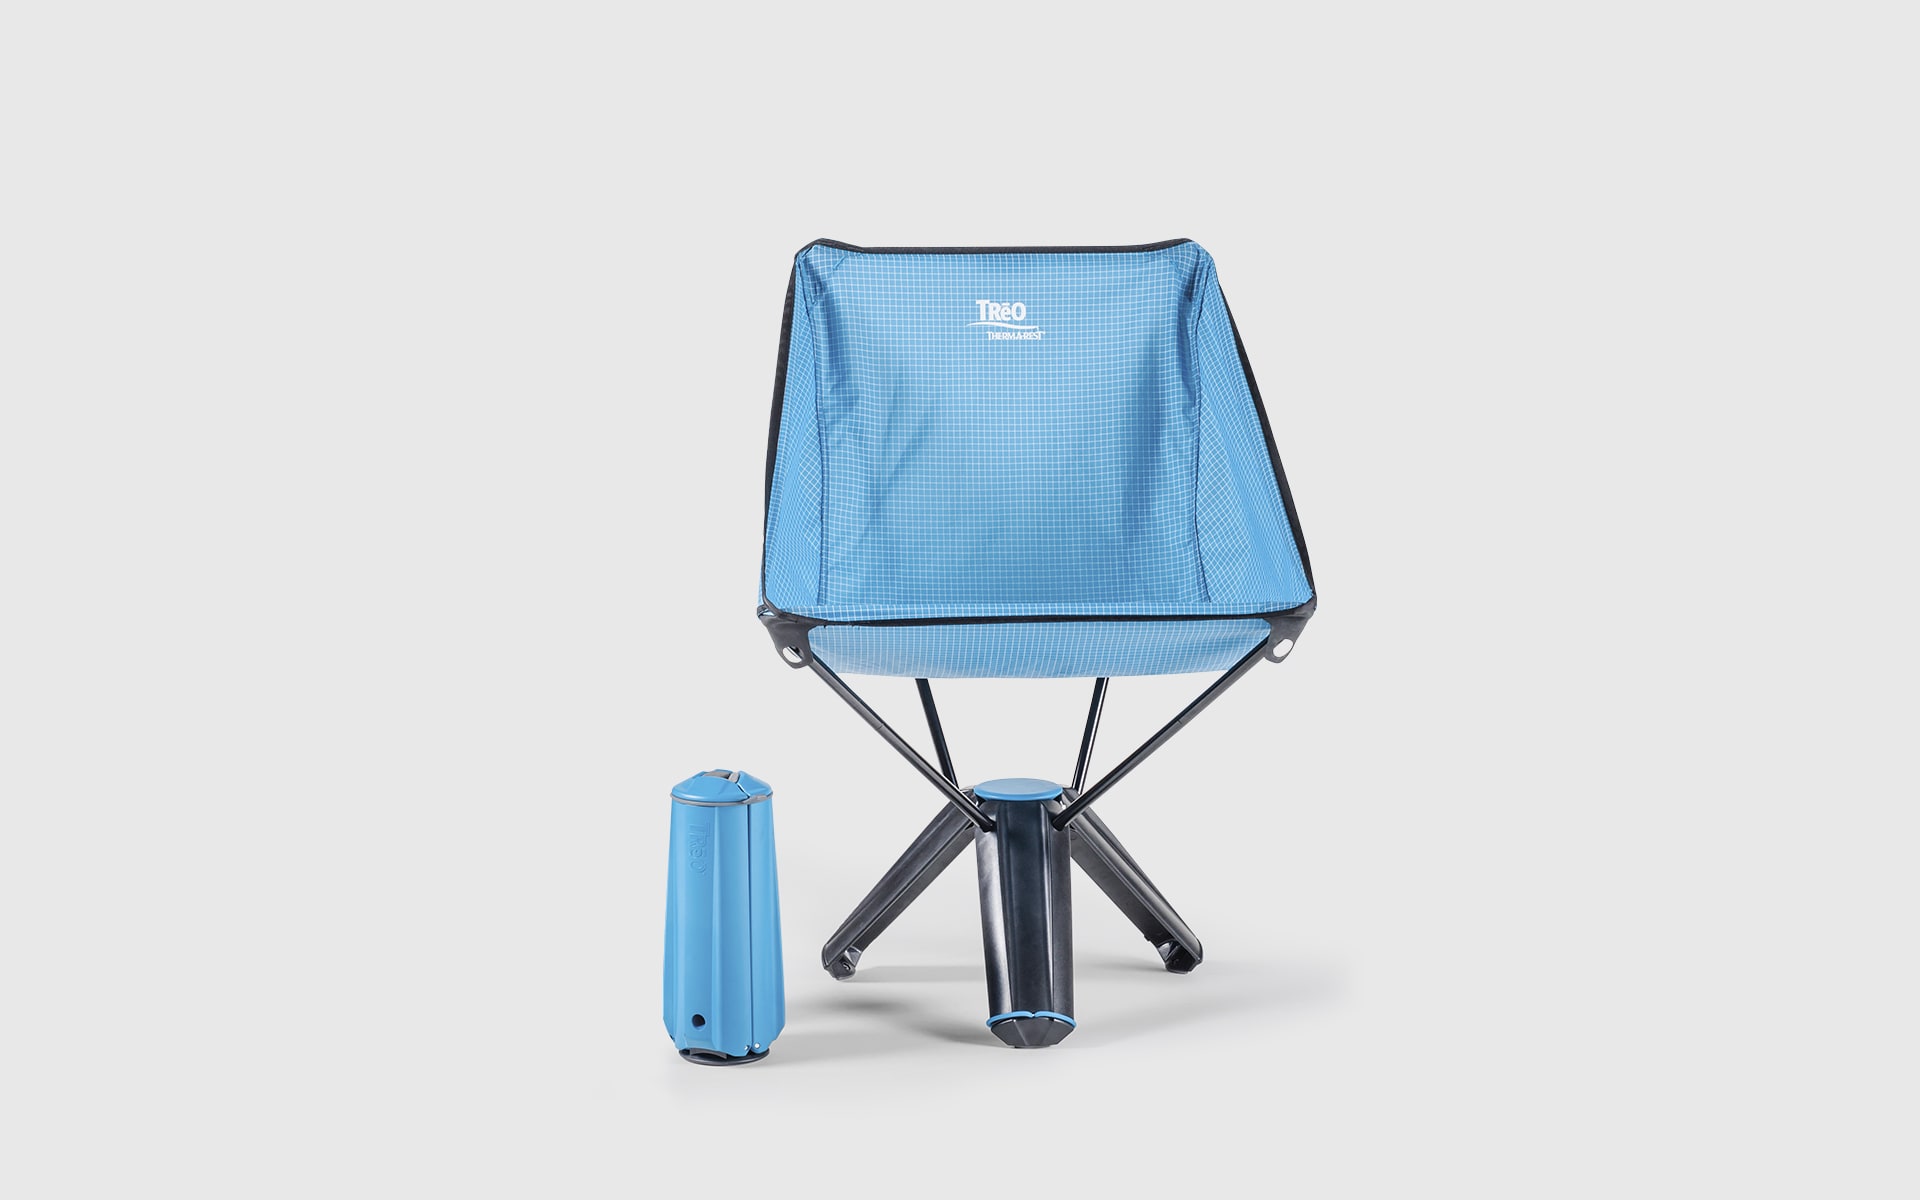 Klappbarer Outdoor-Stuhl Therm-a-Rest Treo von ITO Design in blau